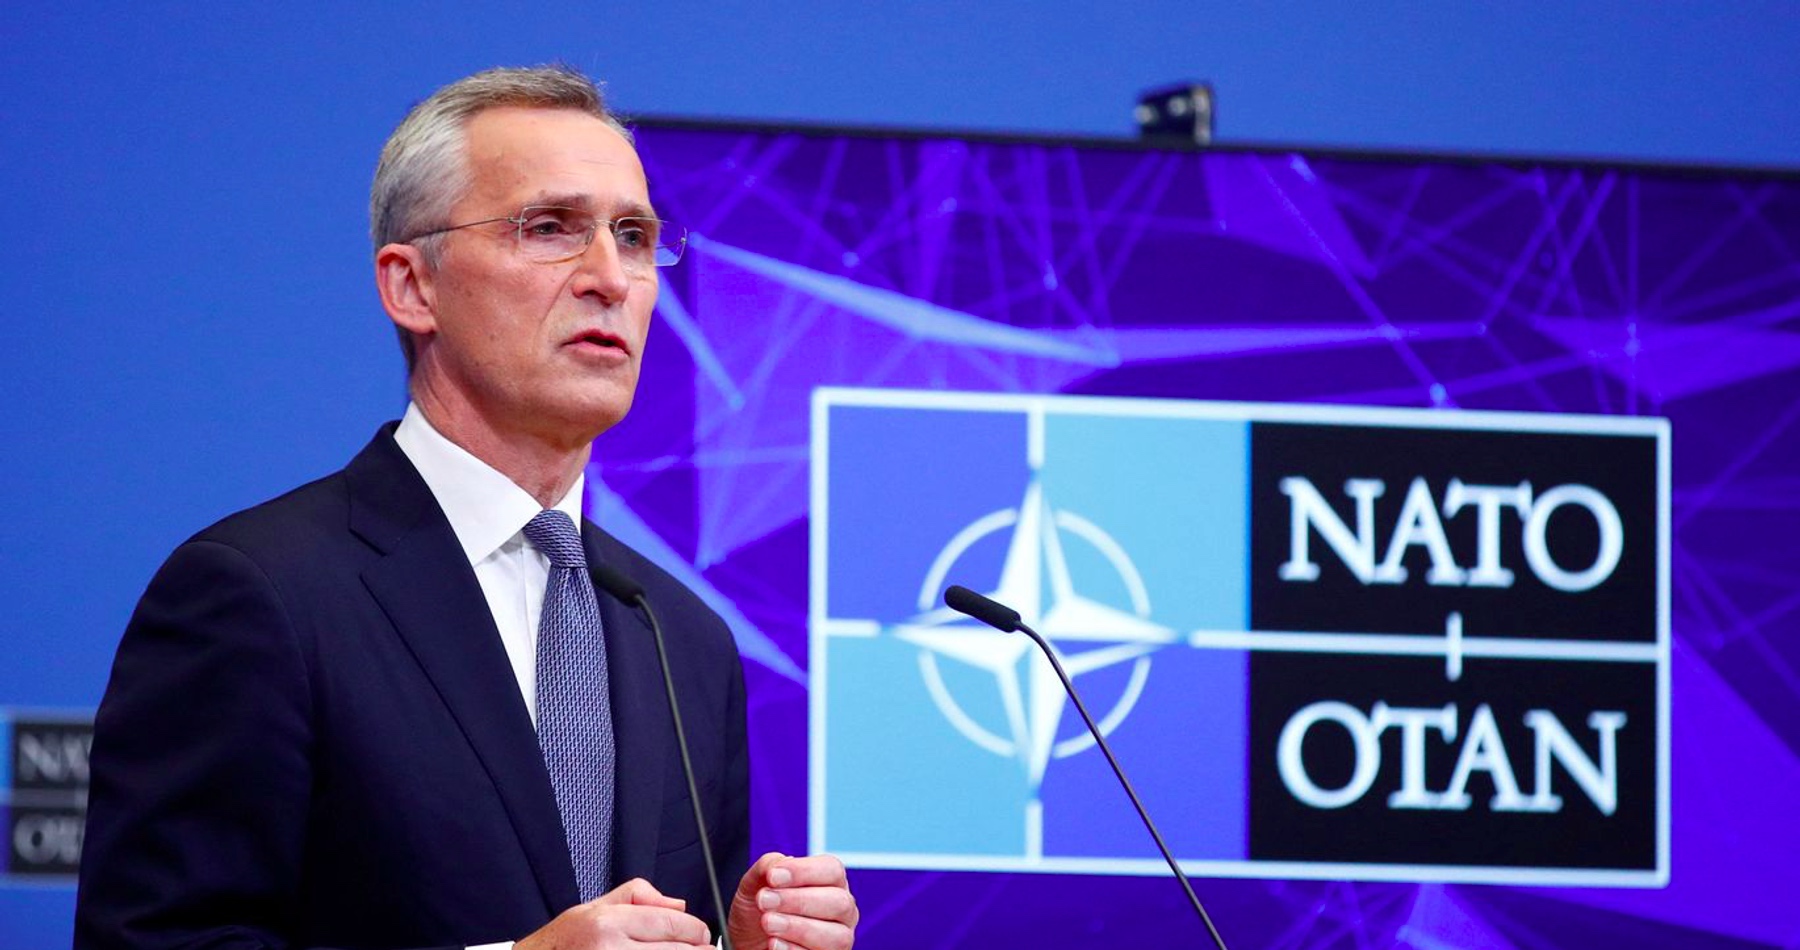 NATO uviedlo svoje vojská do pohotovosti a posiela do východnej Európy ďalšie lode a bojové lietadlá, oznámil šéf Severoatlantickej aliancie